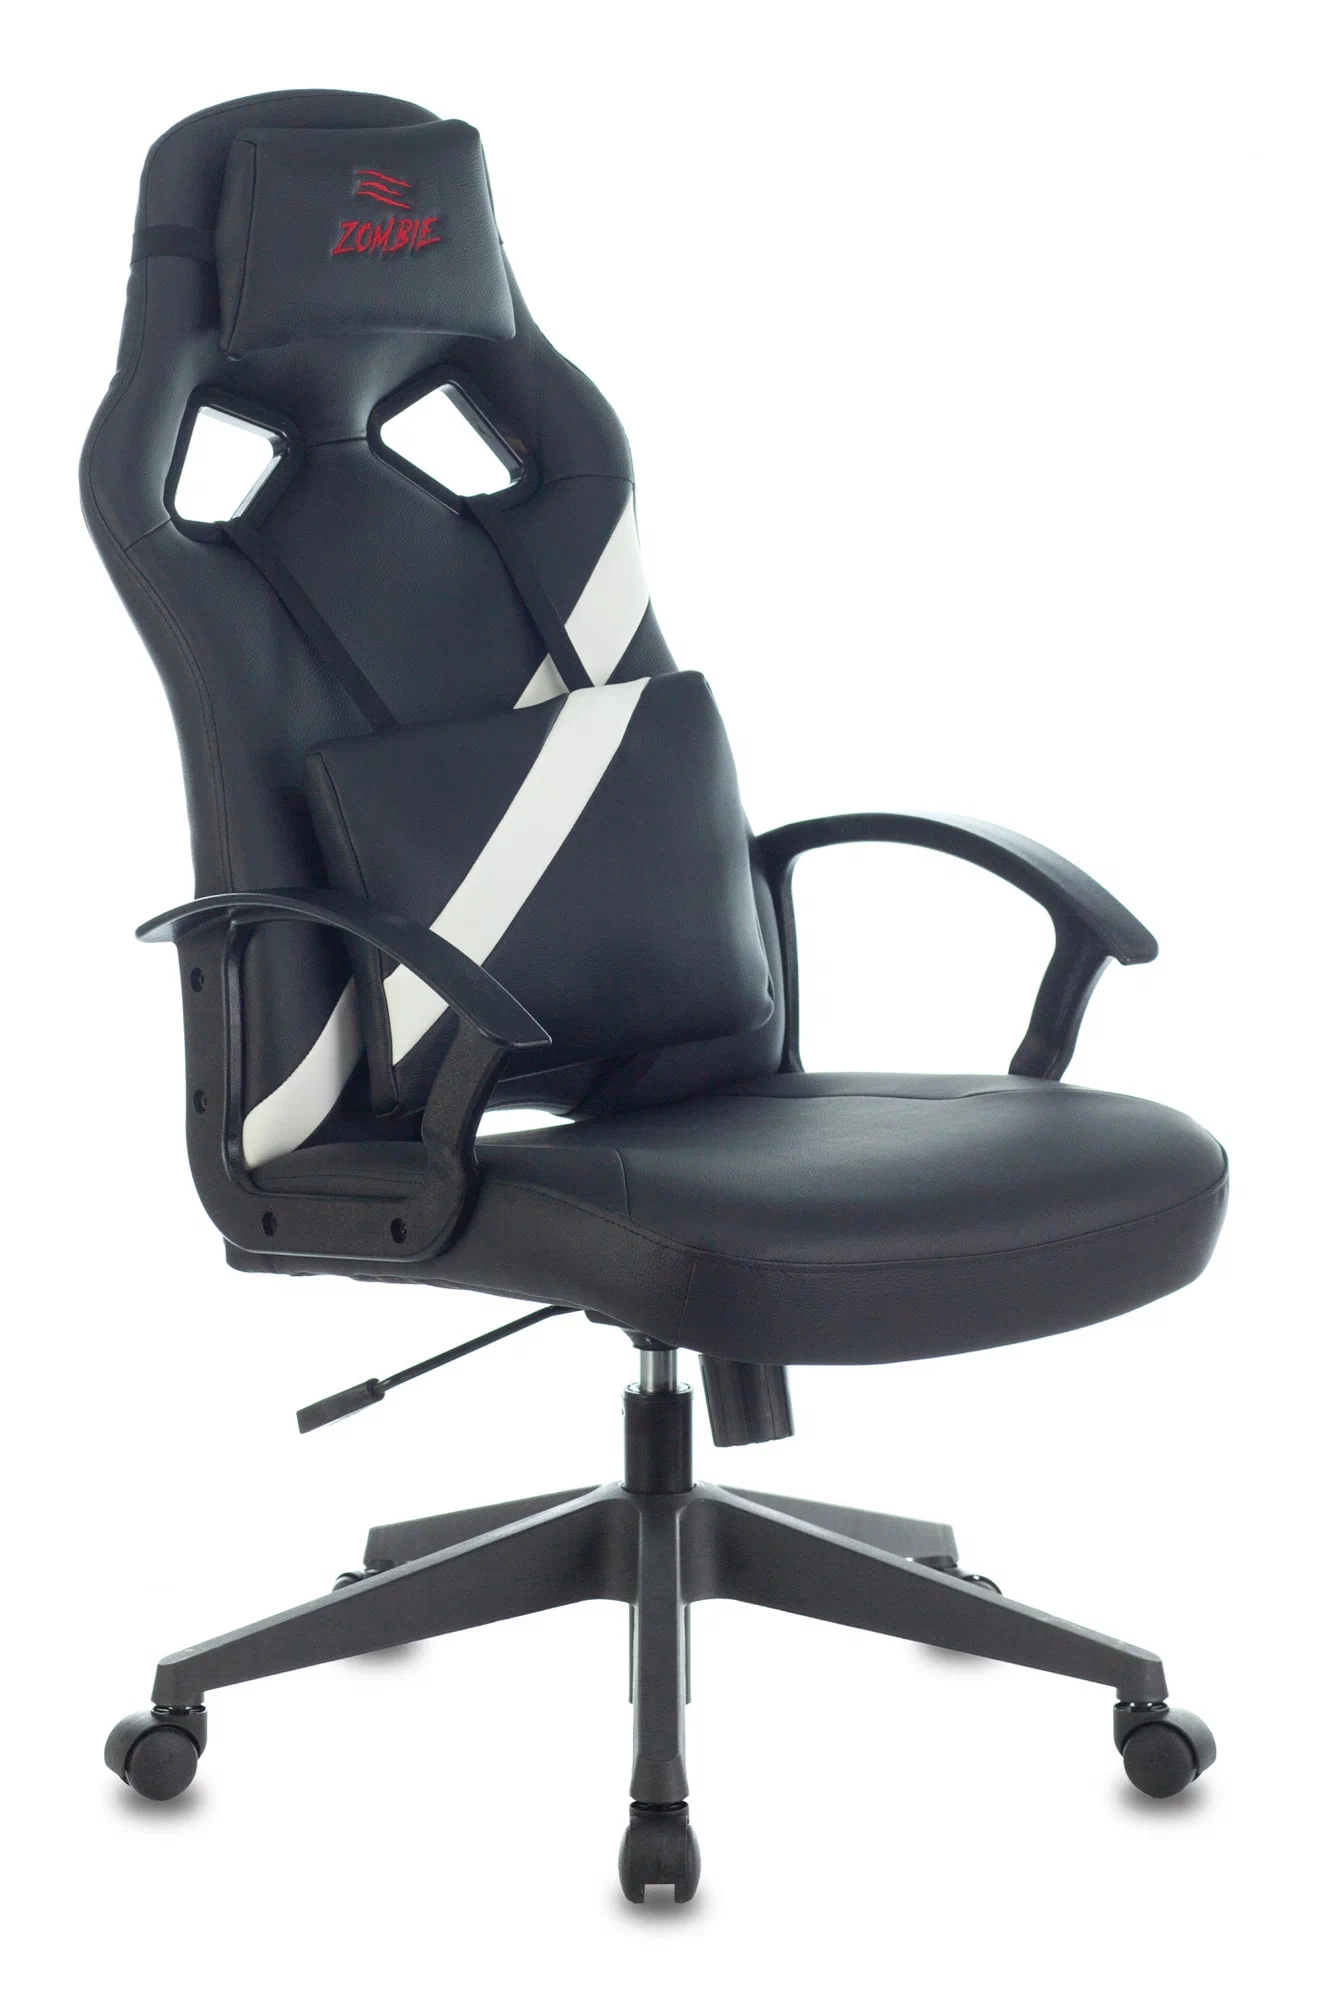 Компьютерное кресло Zombie DRIVER игровое, обивка: искусственная кожа, цвет: черный/красный